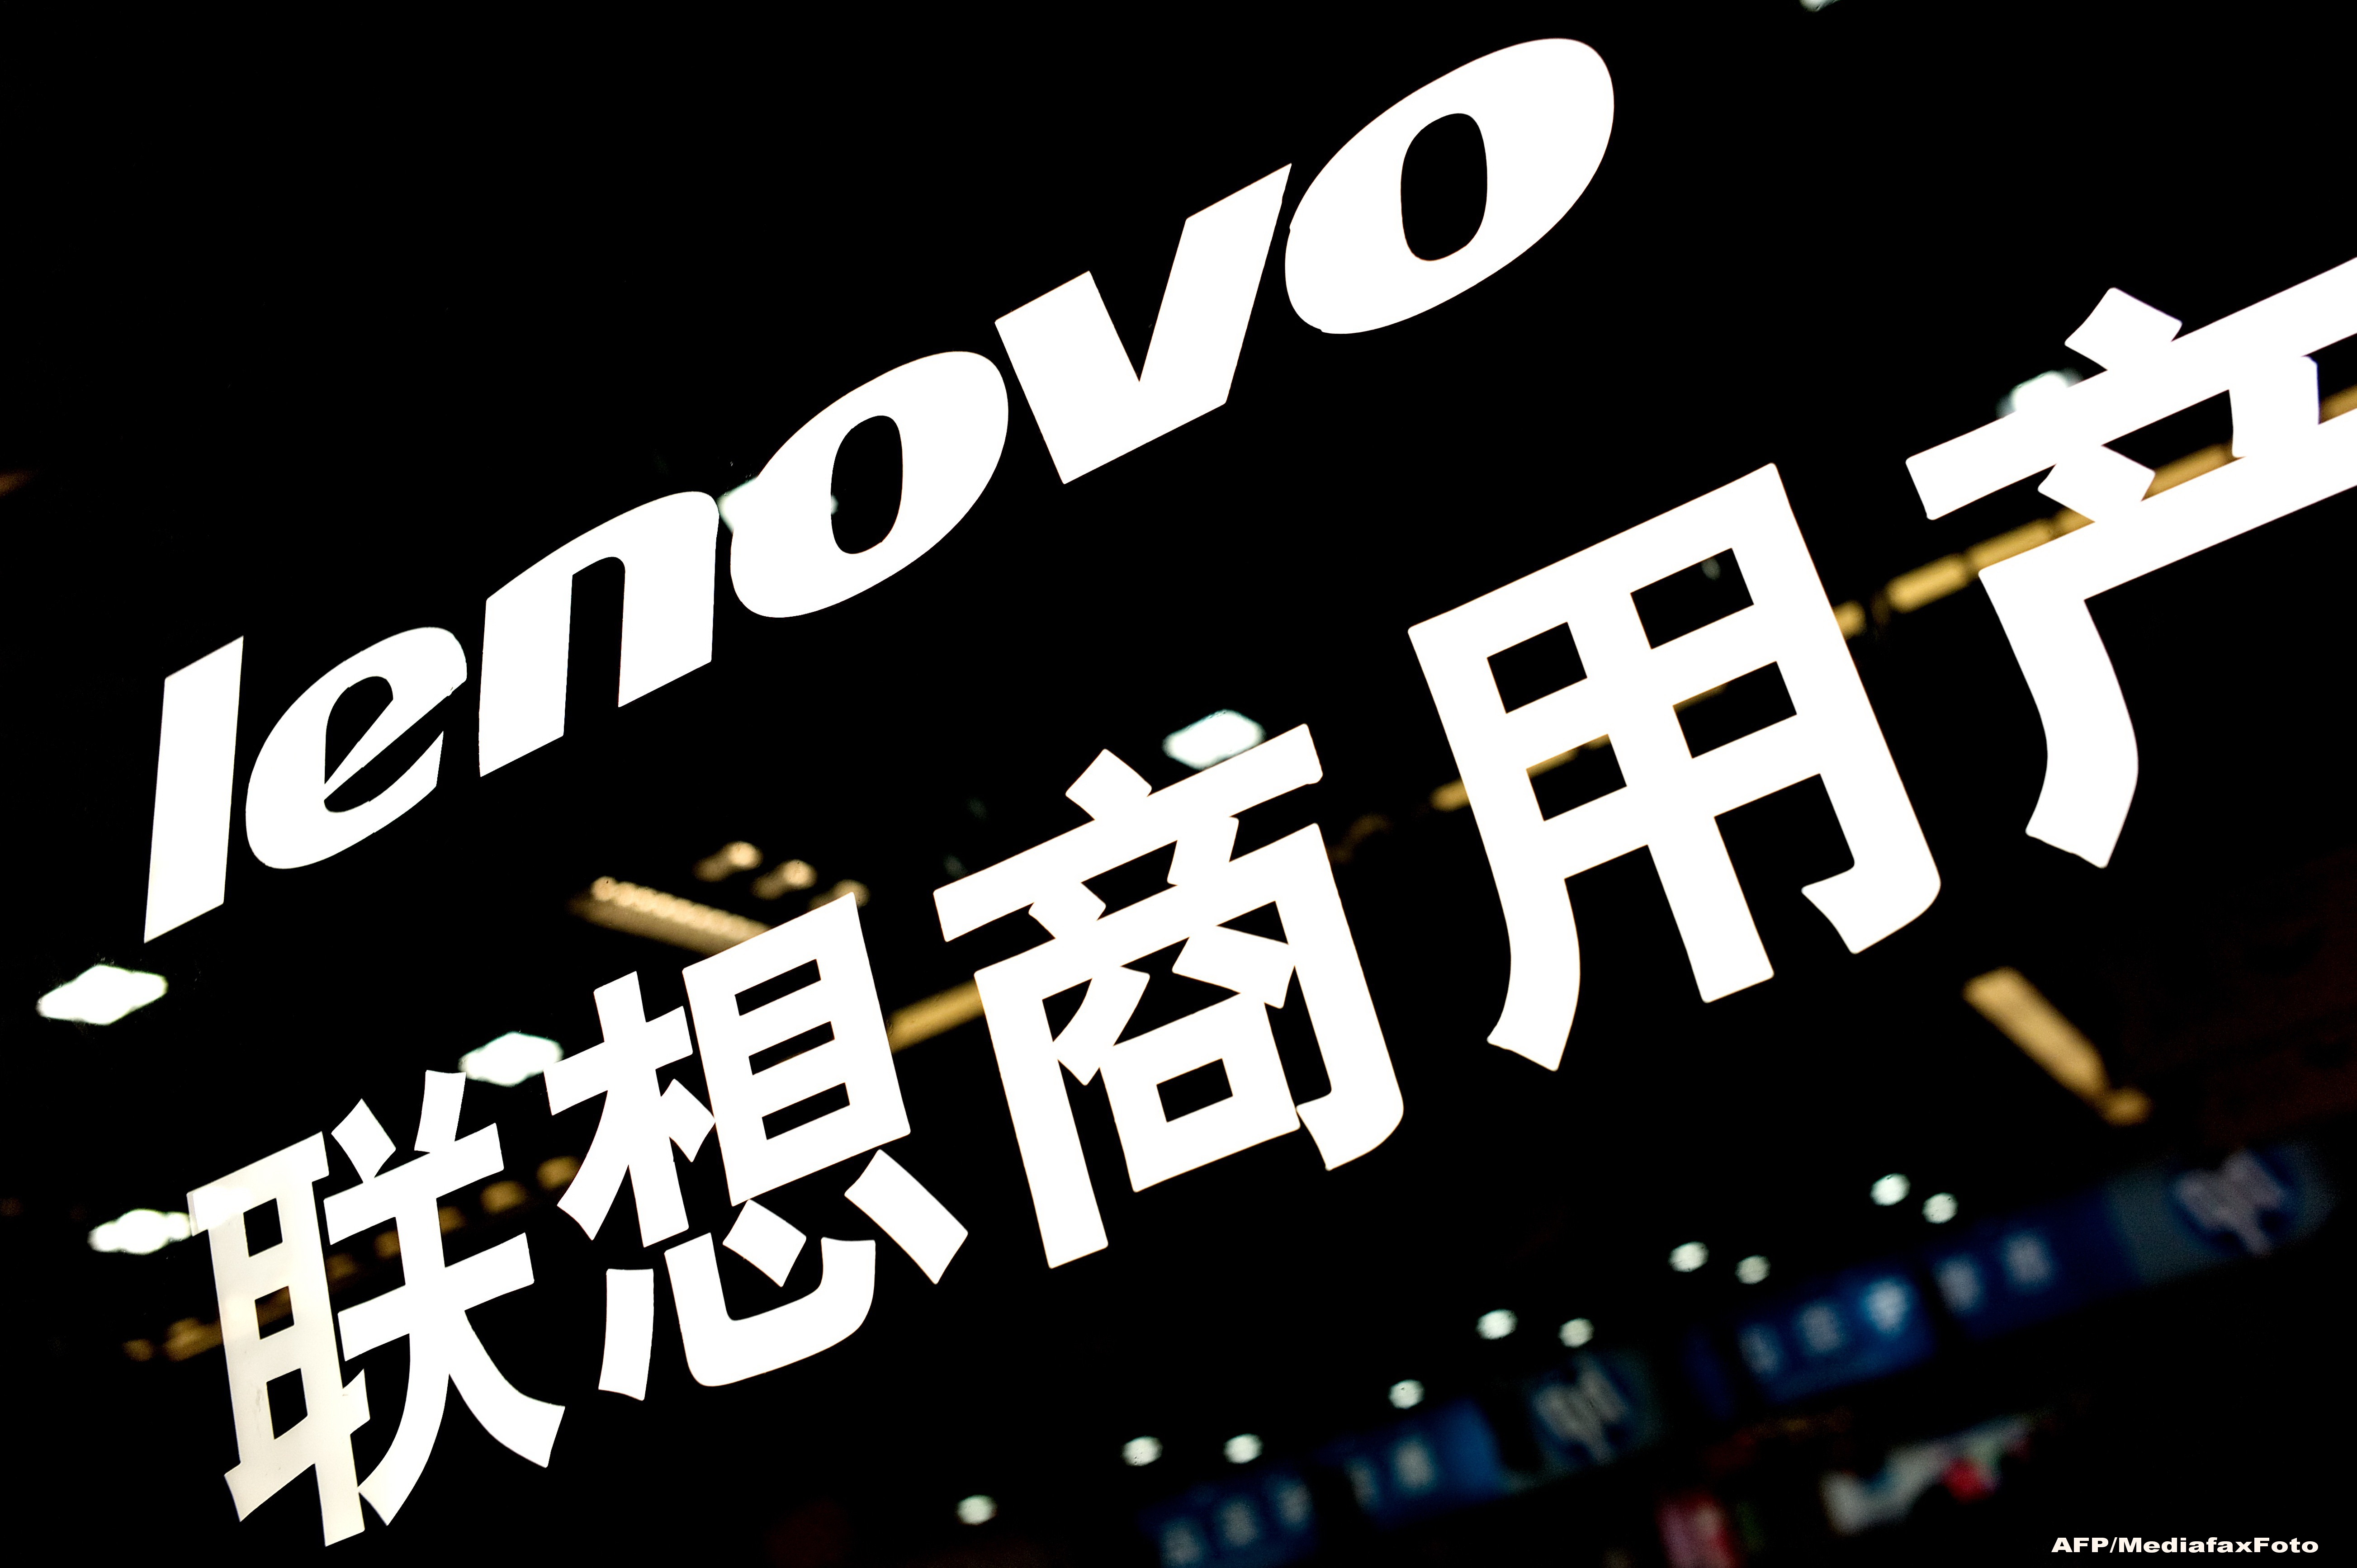 O miscare la care nu se astepta nimeni. Google vinde Motorola companiei chineze Lenovo cu 2,91 miliarde de dolari